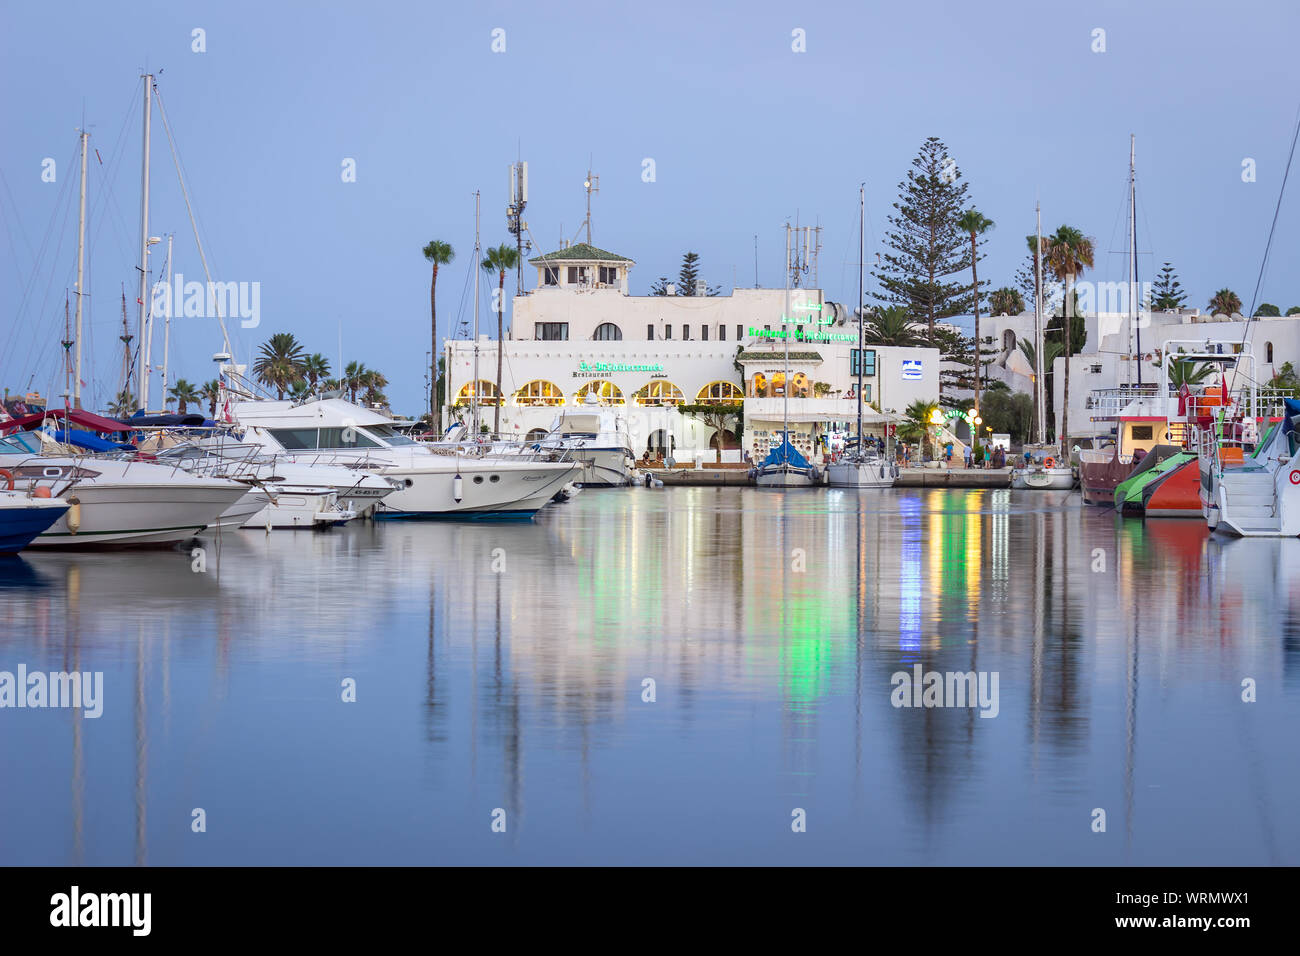 Heure bleue à Marina Port El Kantaoui, de beaux bateaux, yachts et bateaux stationnés dans la mer, restaurants et boutiques de cadeaux Banque D'Images